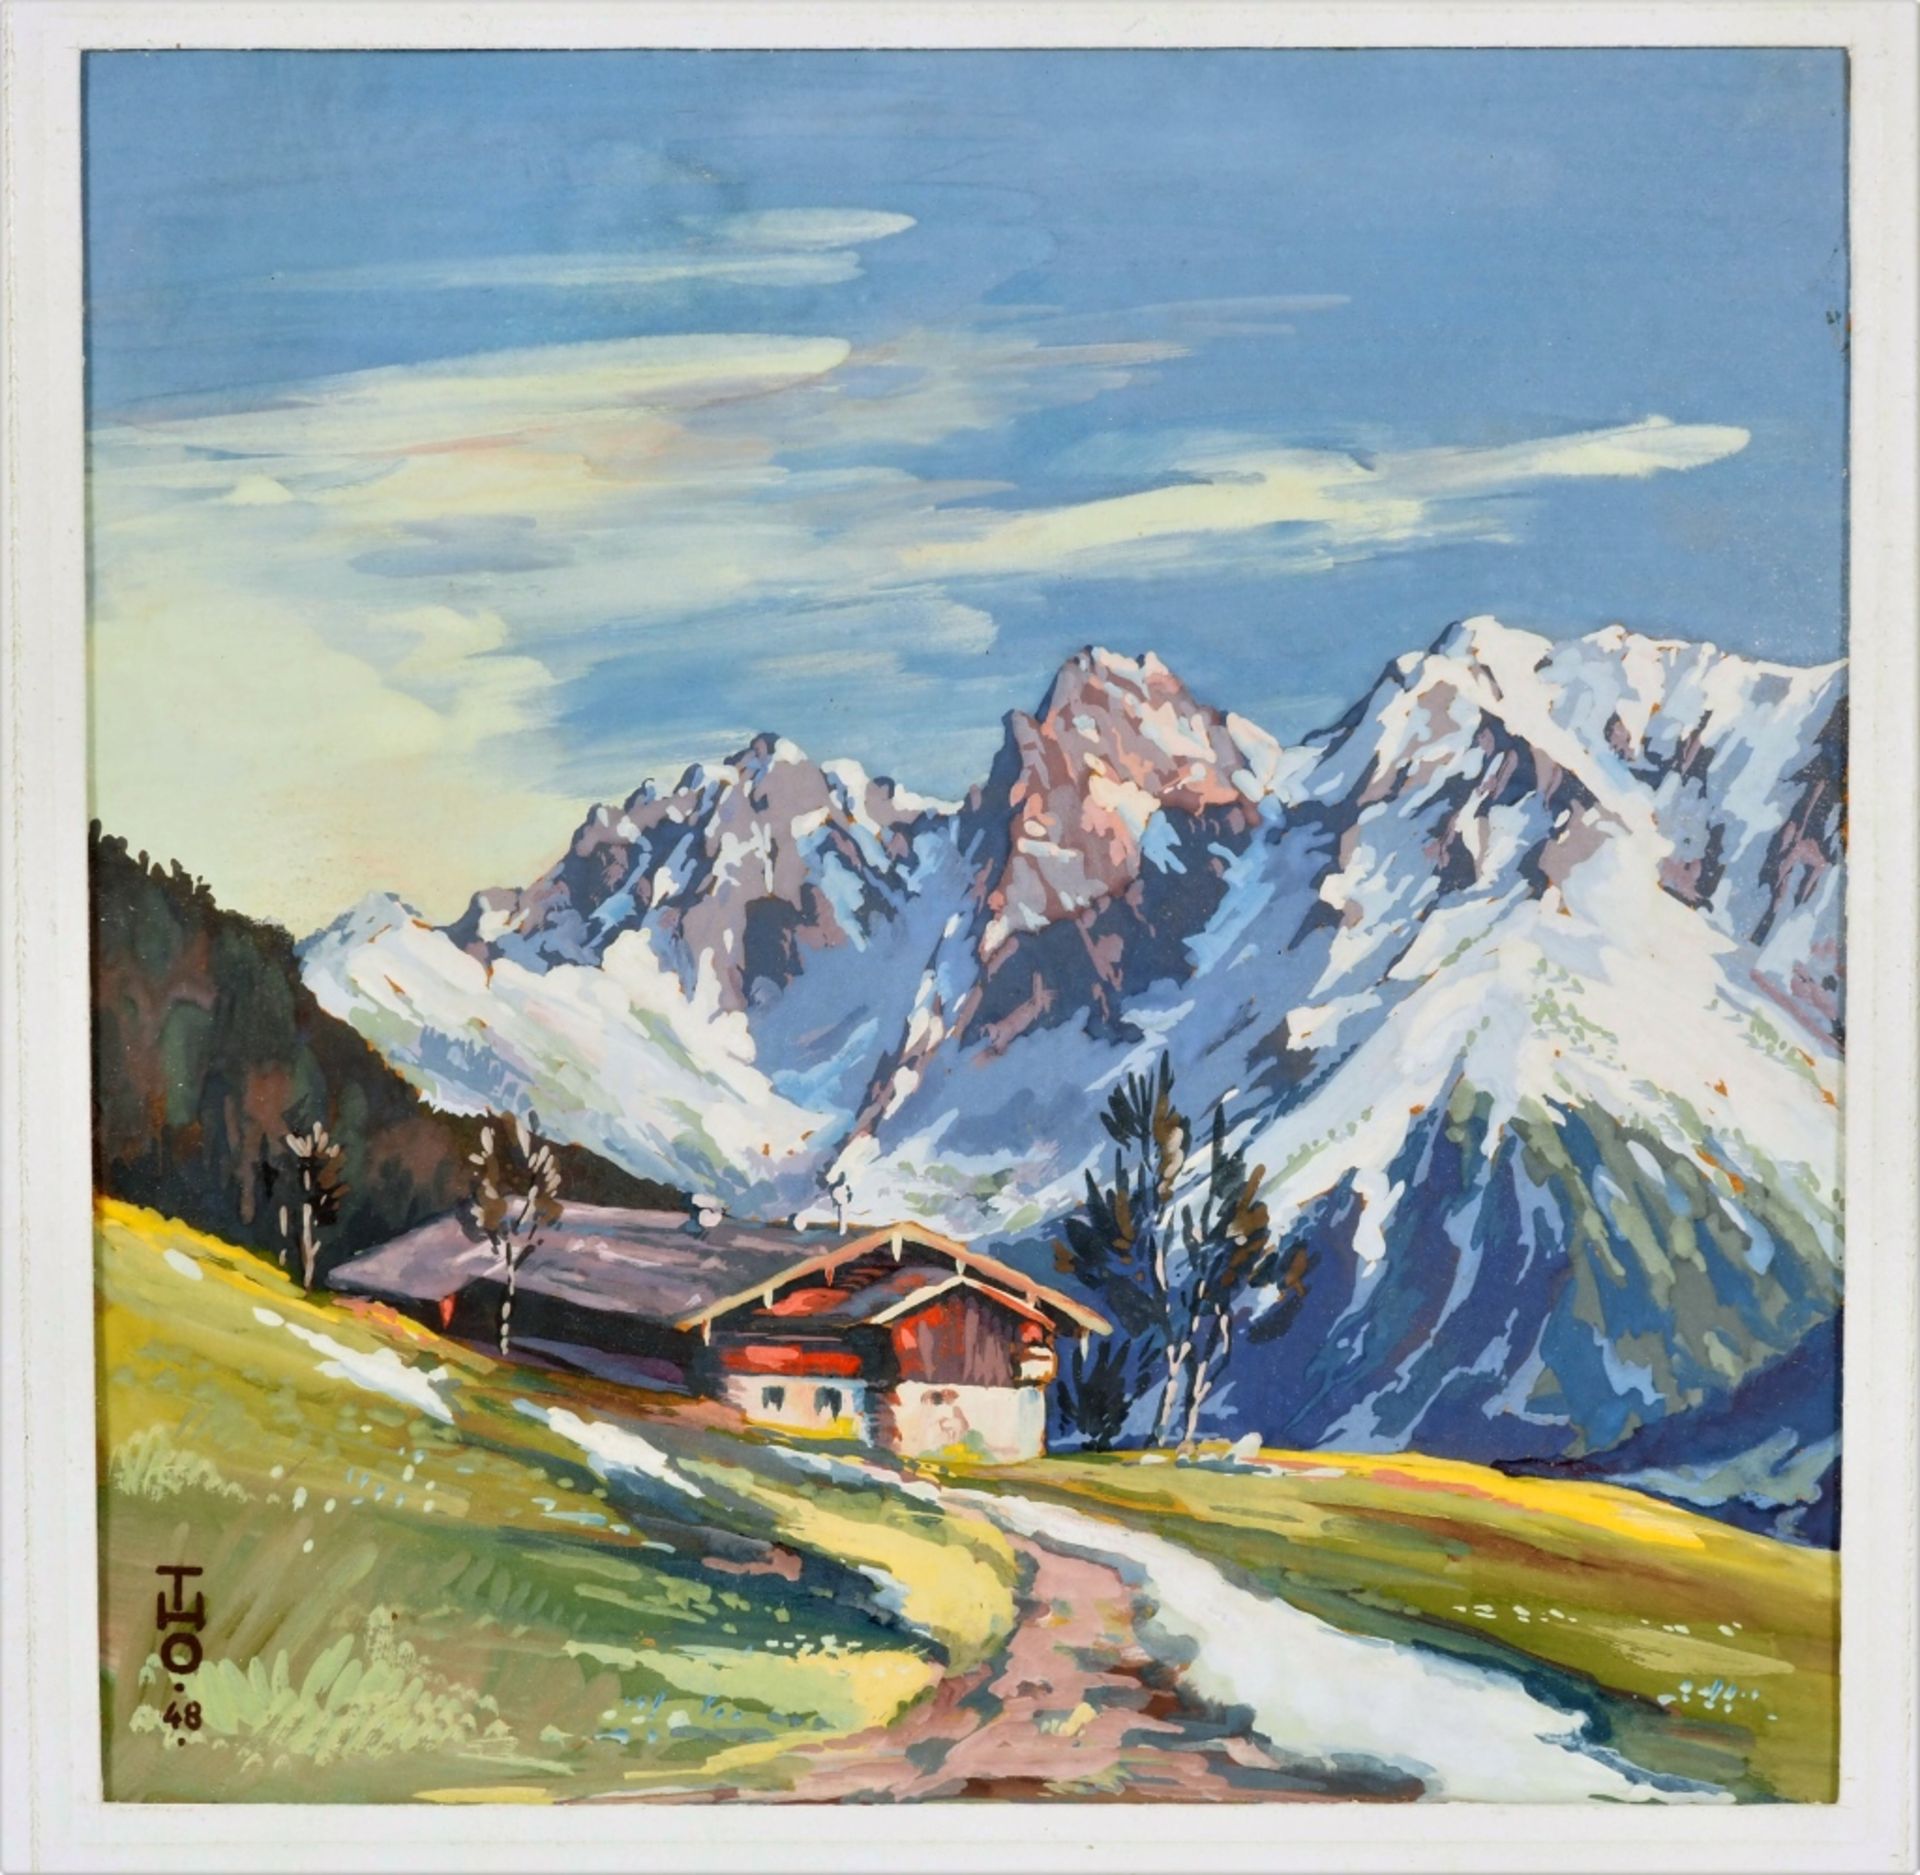 Hütte in den Alpen - sign. "THO 48"